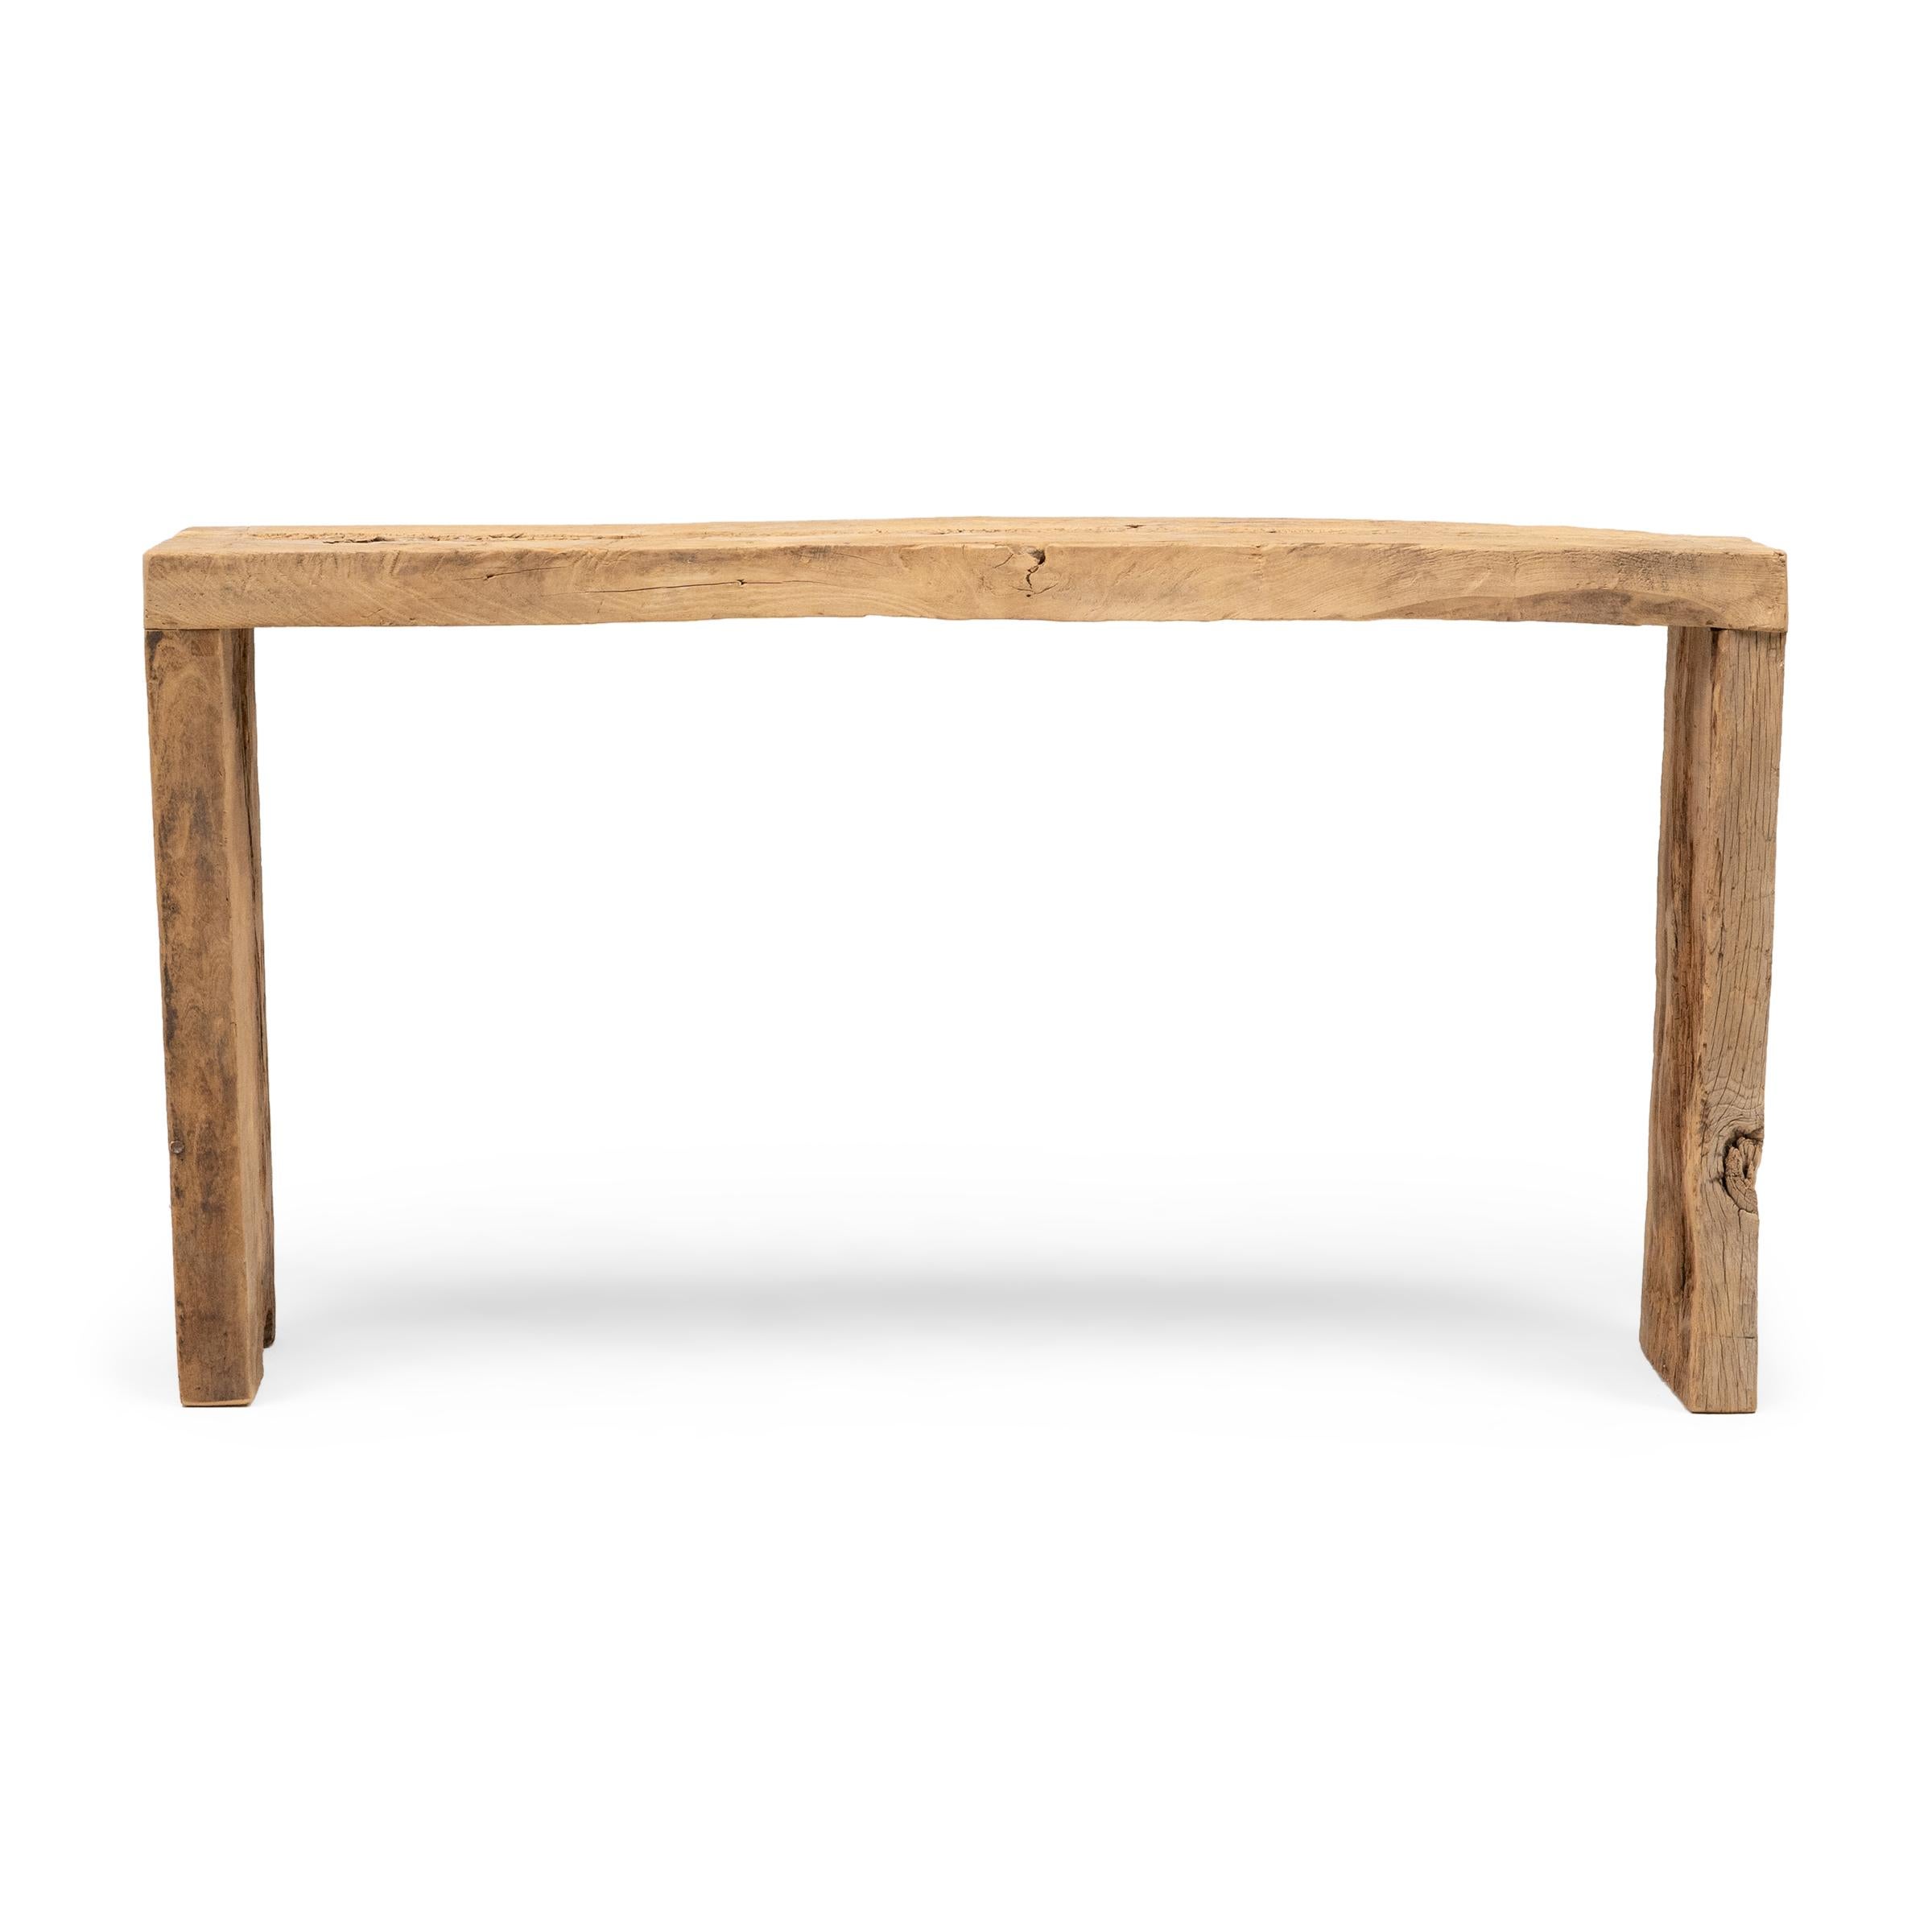 Cette table console contemporaine est une célébration du style wabi-sabi. Fabriquée en bois récupéré de l'architecture de la dynastie Qing, la table présente un design minimaliste en cascade avec des coins à queue d'aronde qui recréent les méthodes